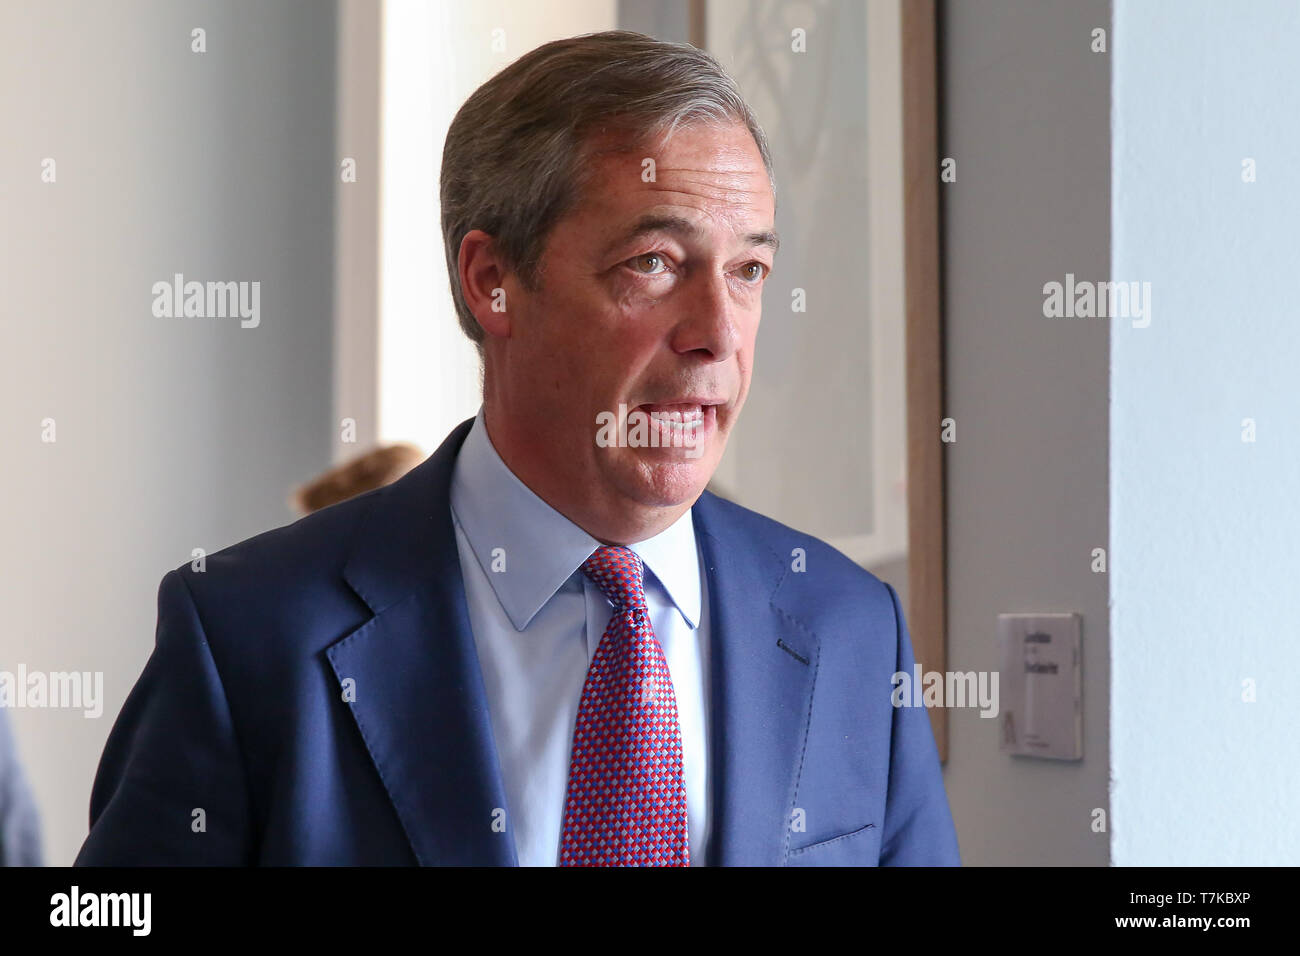 Führer der Partei Brexit Nigel Farage gesehen Sprechen während der Pressekonferenz des Brexit Partei für den Wahlkampf für die Europawahl in Westminster. Das Vereinigte Königreich wird an den Wahlen zum Europäischen Parlament statt am 23. Mai 2019. Stockfoto